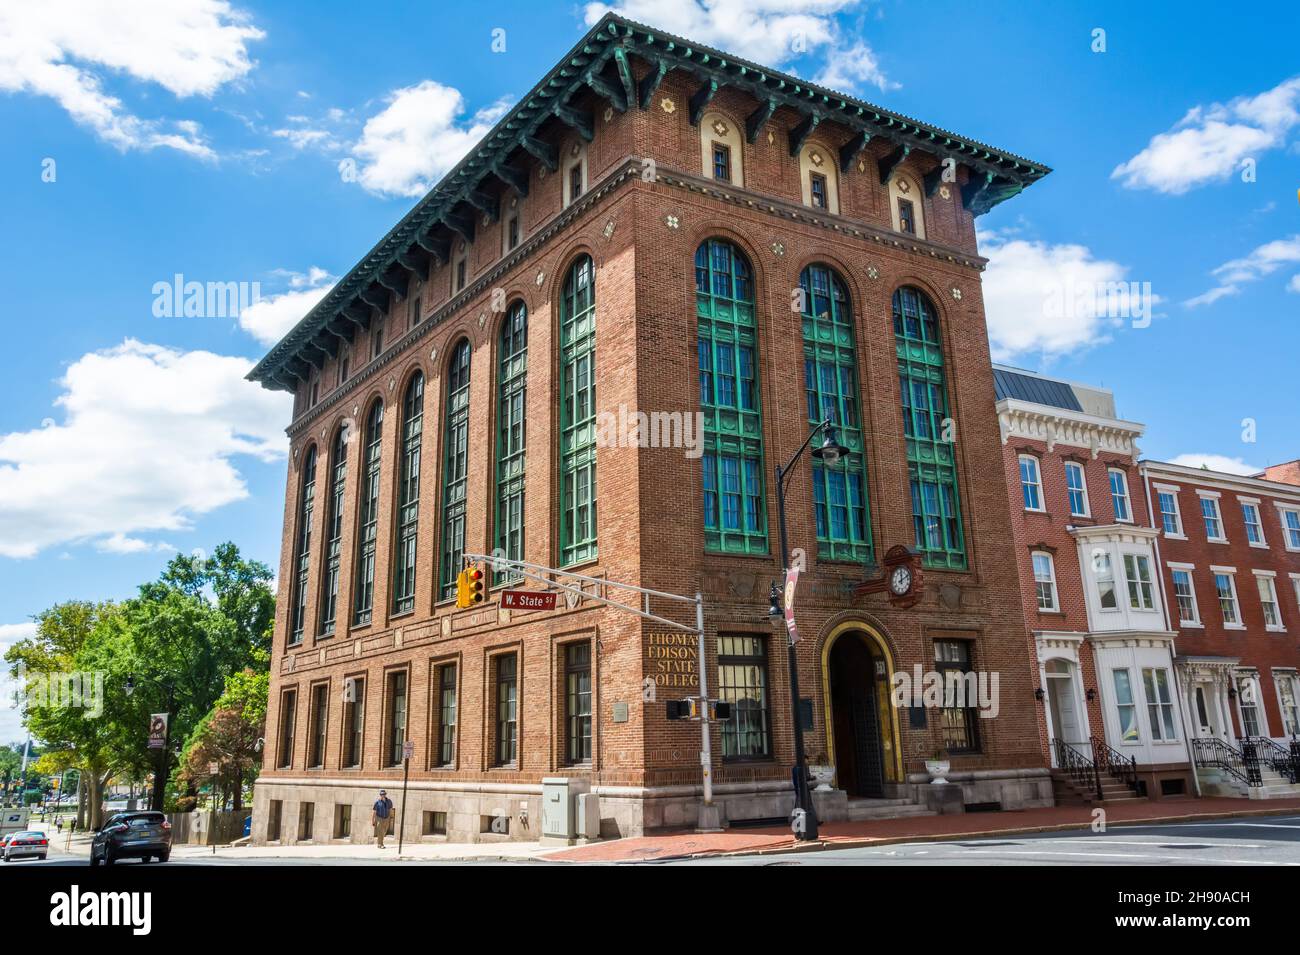 Trenton, New Jersey, États-Unis d'Amérique – 6 septembre 2016.Le Kelsey Building, situé au 101-103 W. State Street, abrite le Thomas Edison State Col Banque D'Images